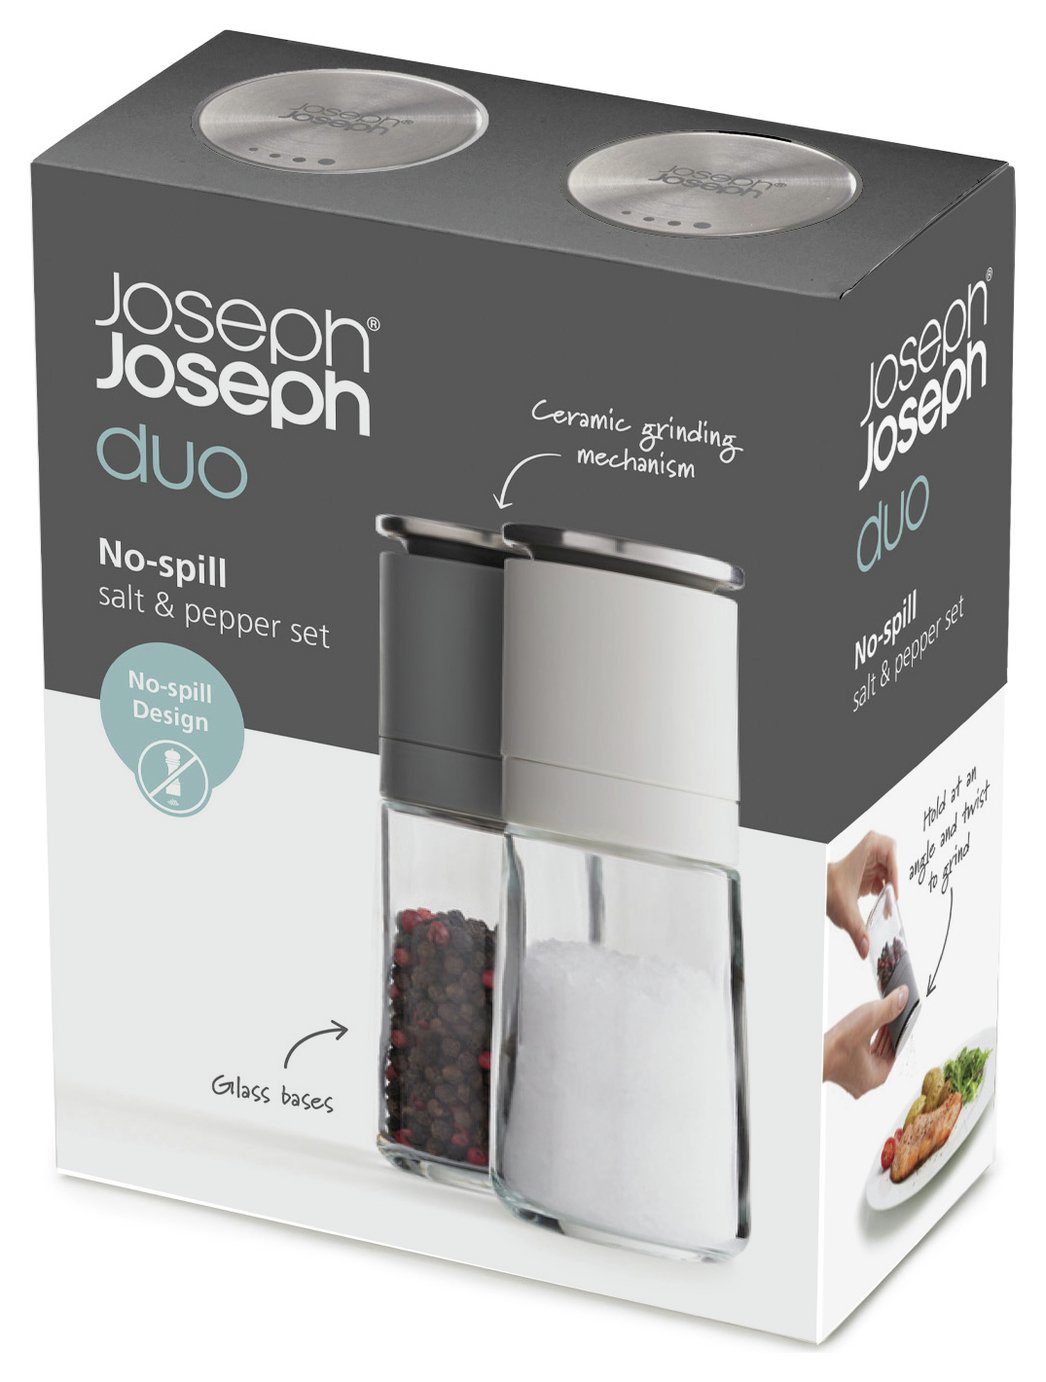 Joseph Joseph Duo No - Spill Salt and Pepper Mill Set